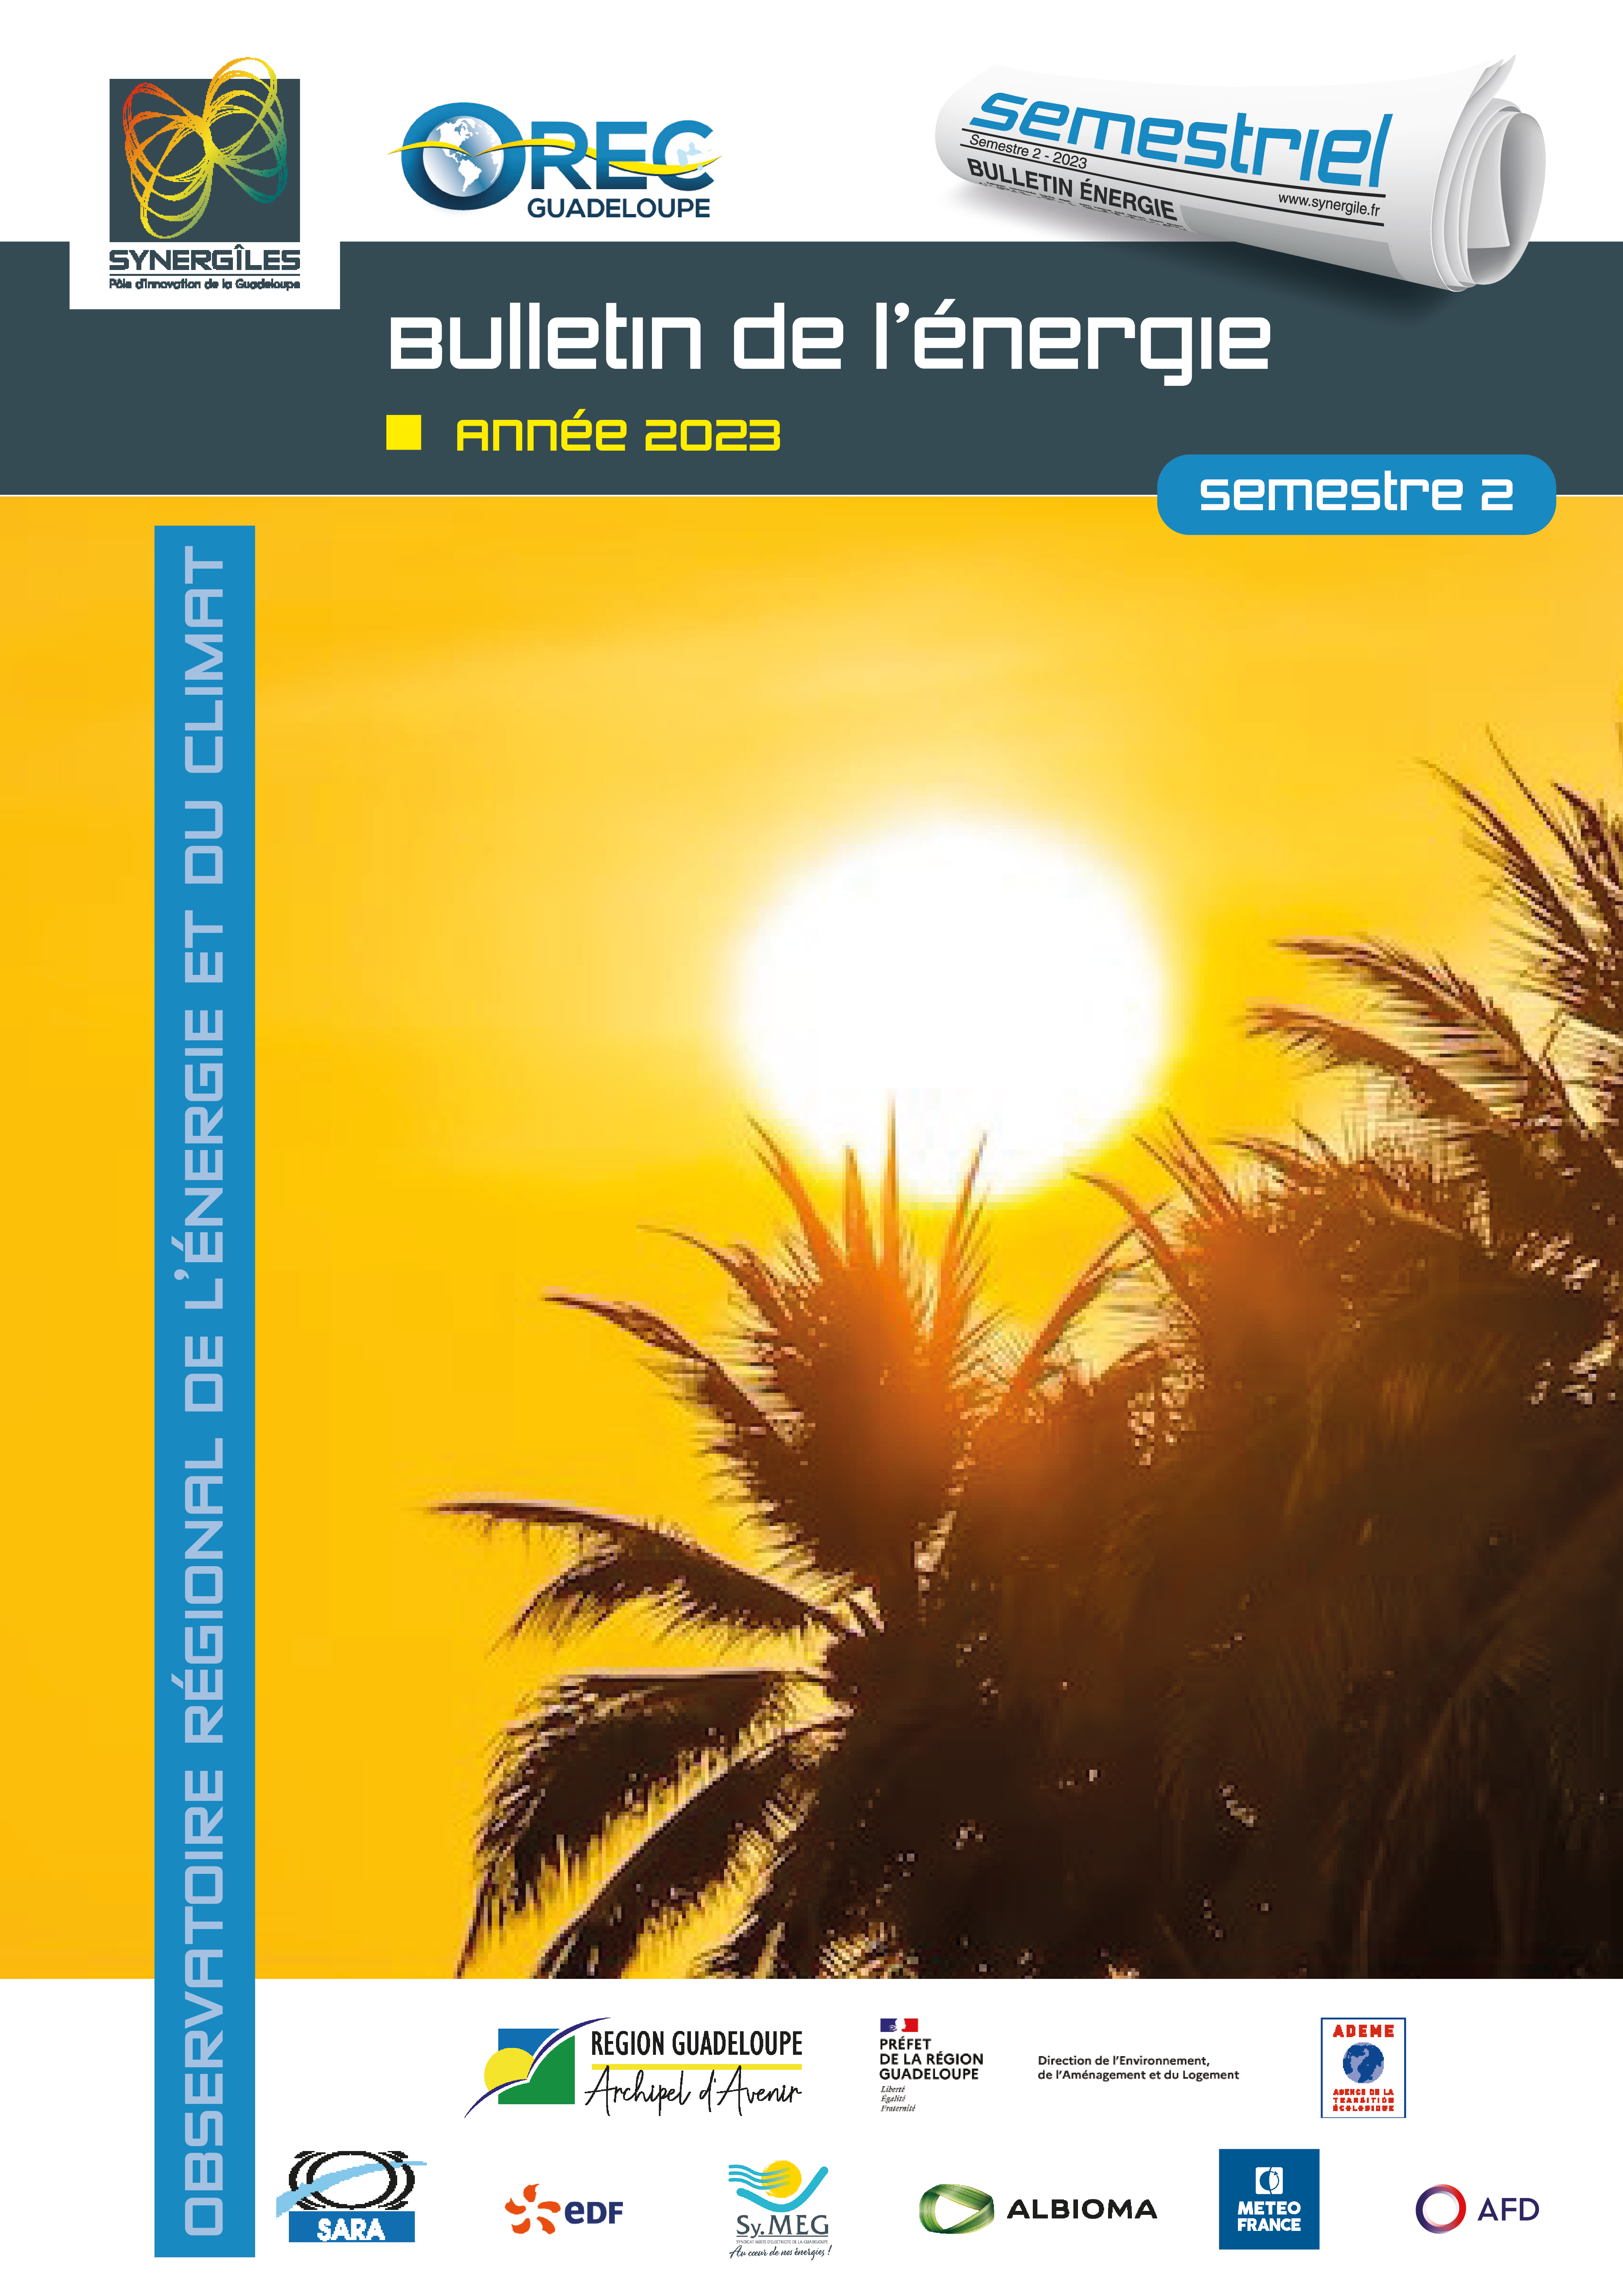 Bulletin de l'énergie Guadeloupe S2 2023